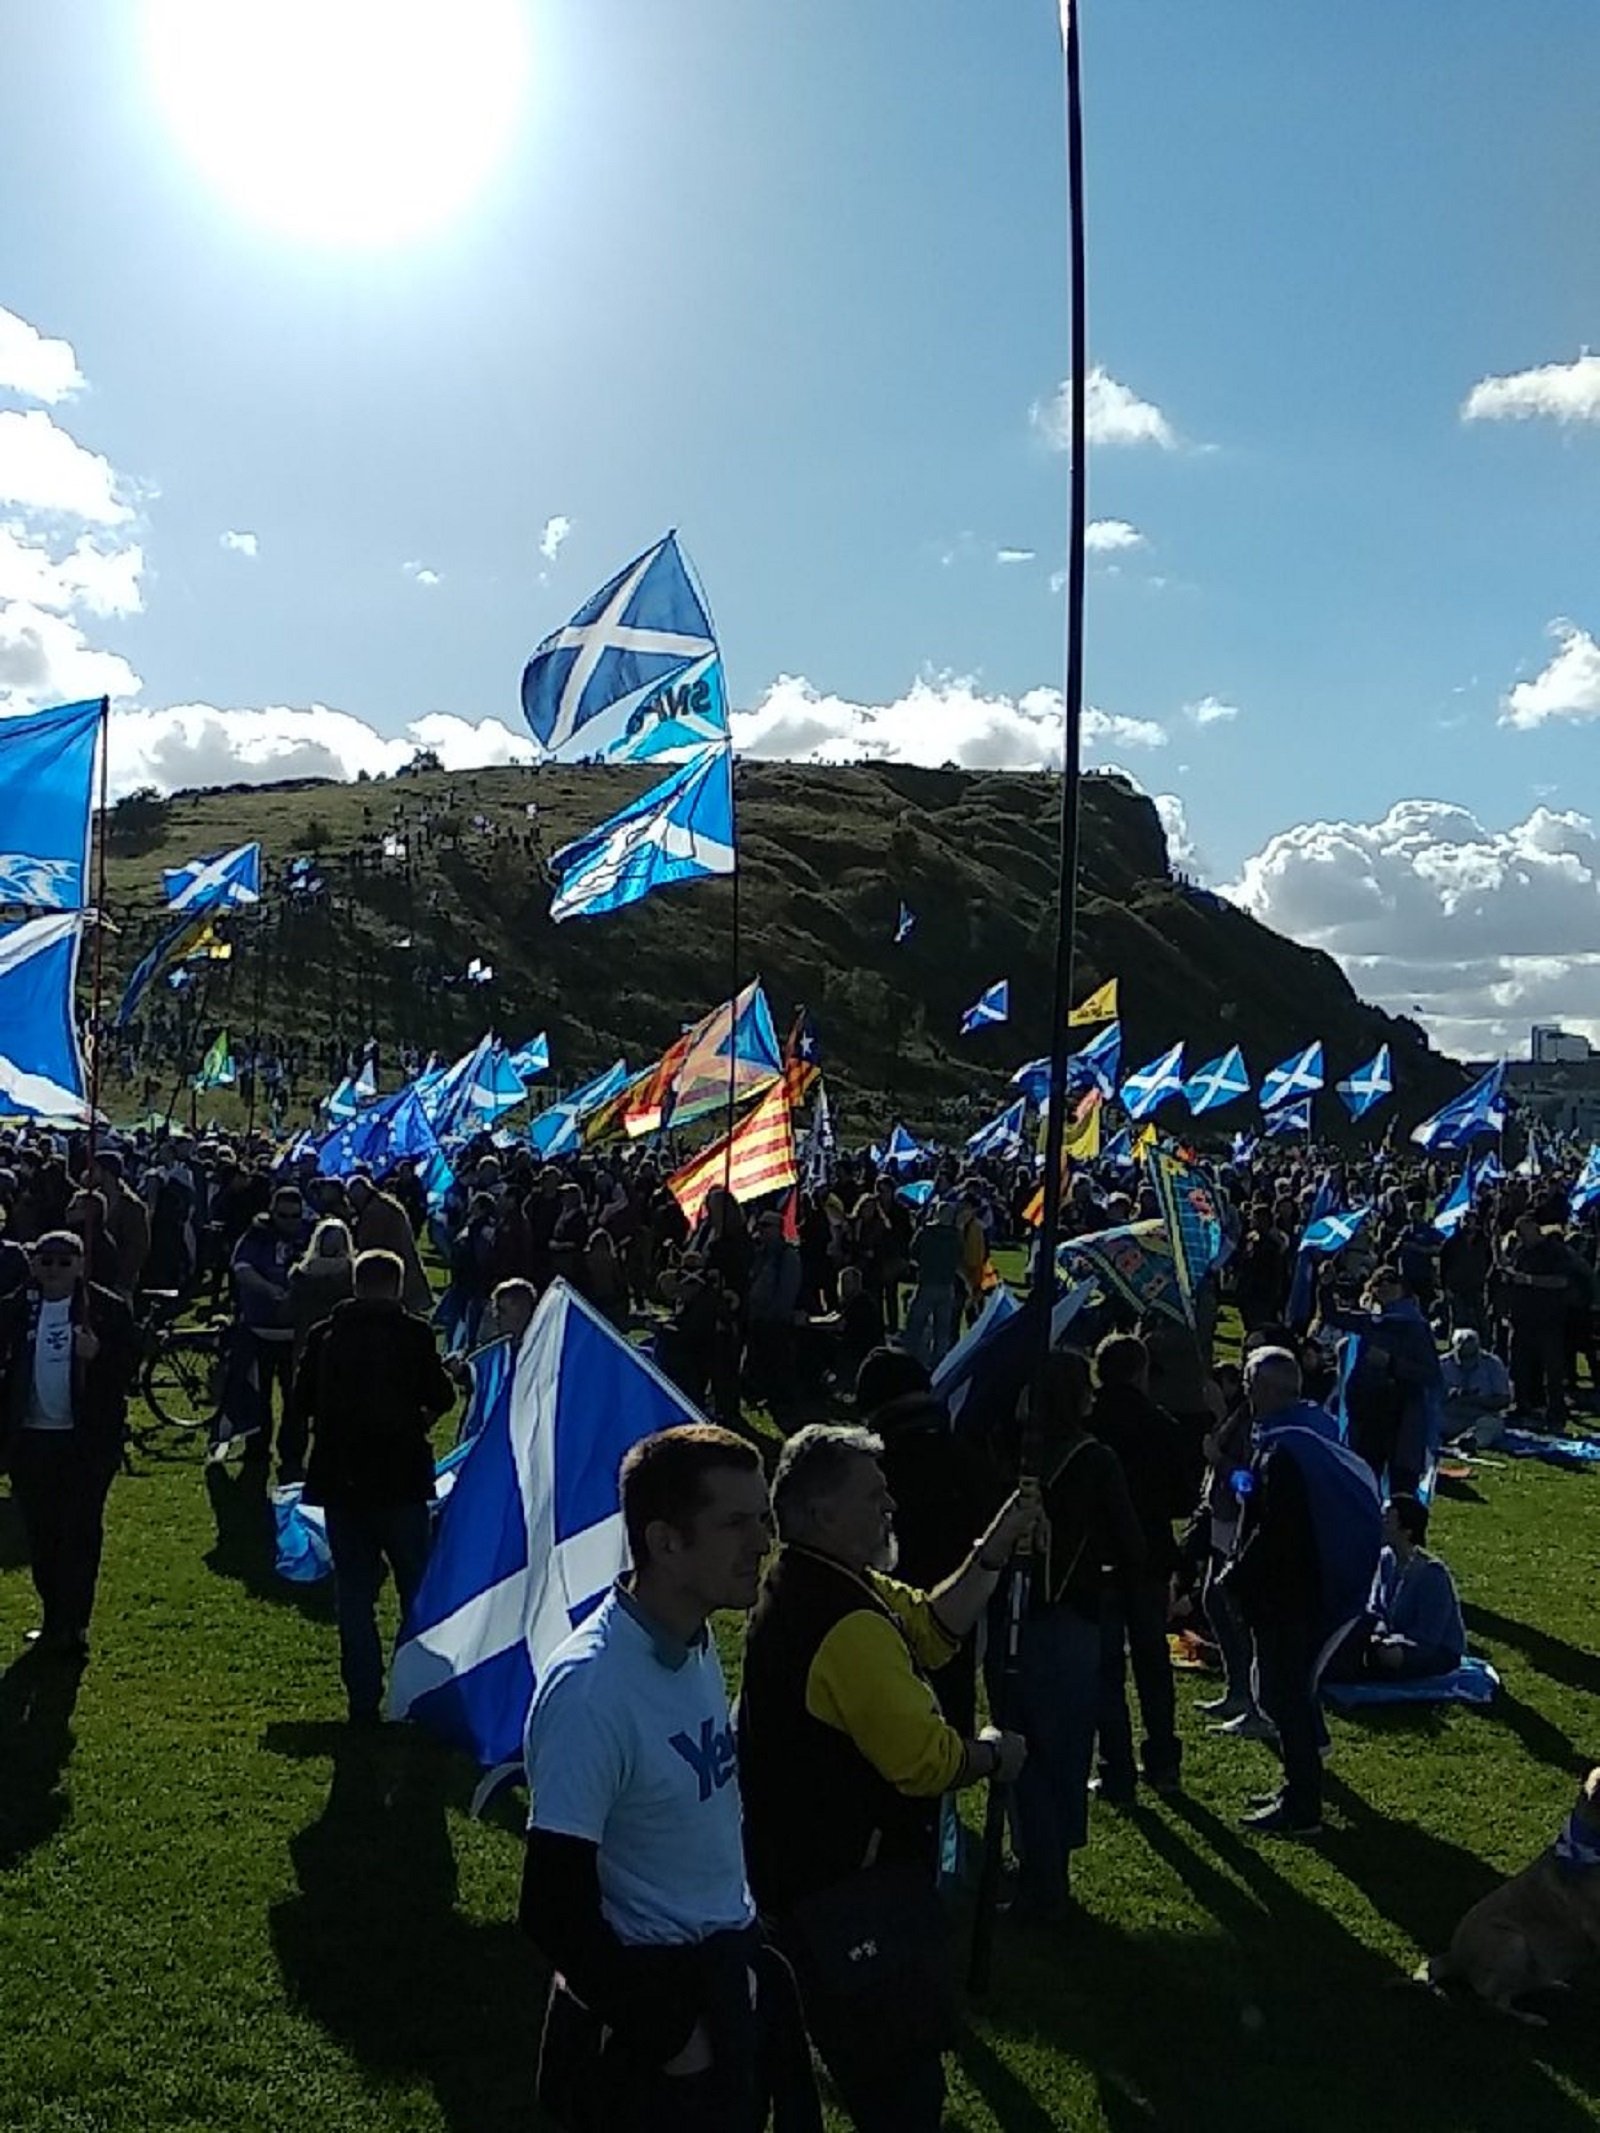 La mayoría de escoceses apoyaría la independencia, según una encuesta